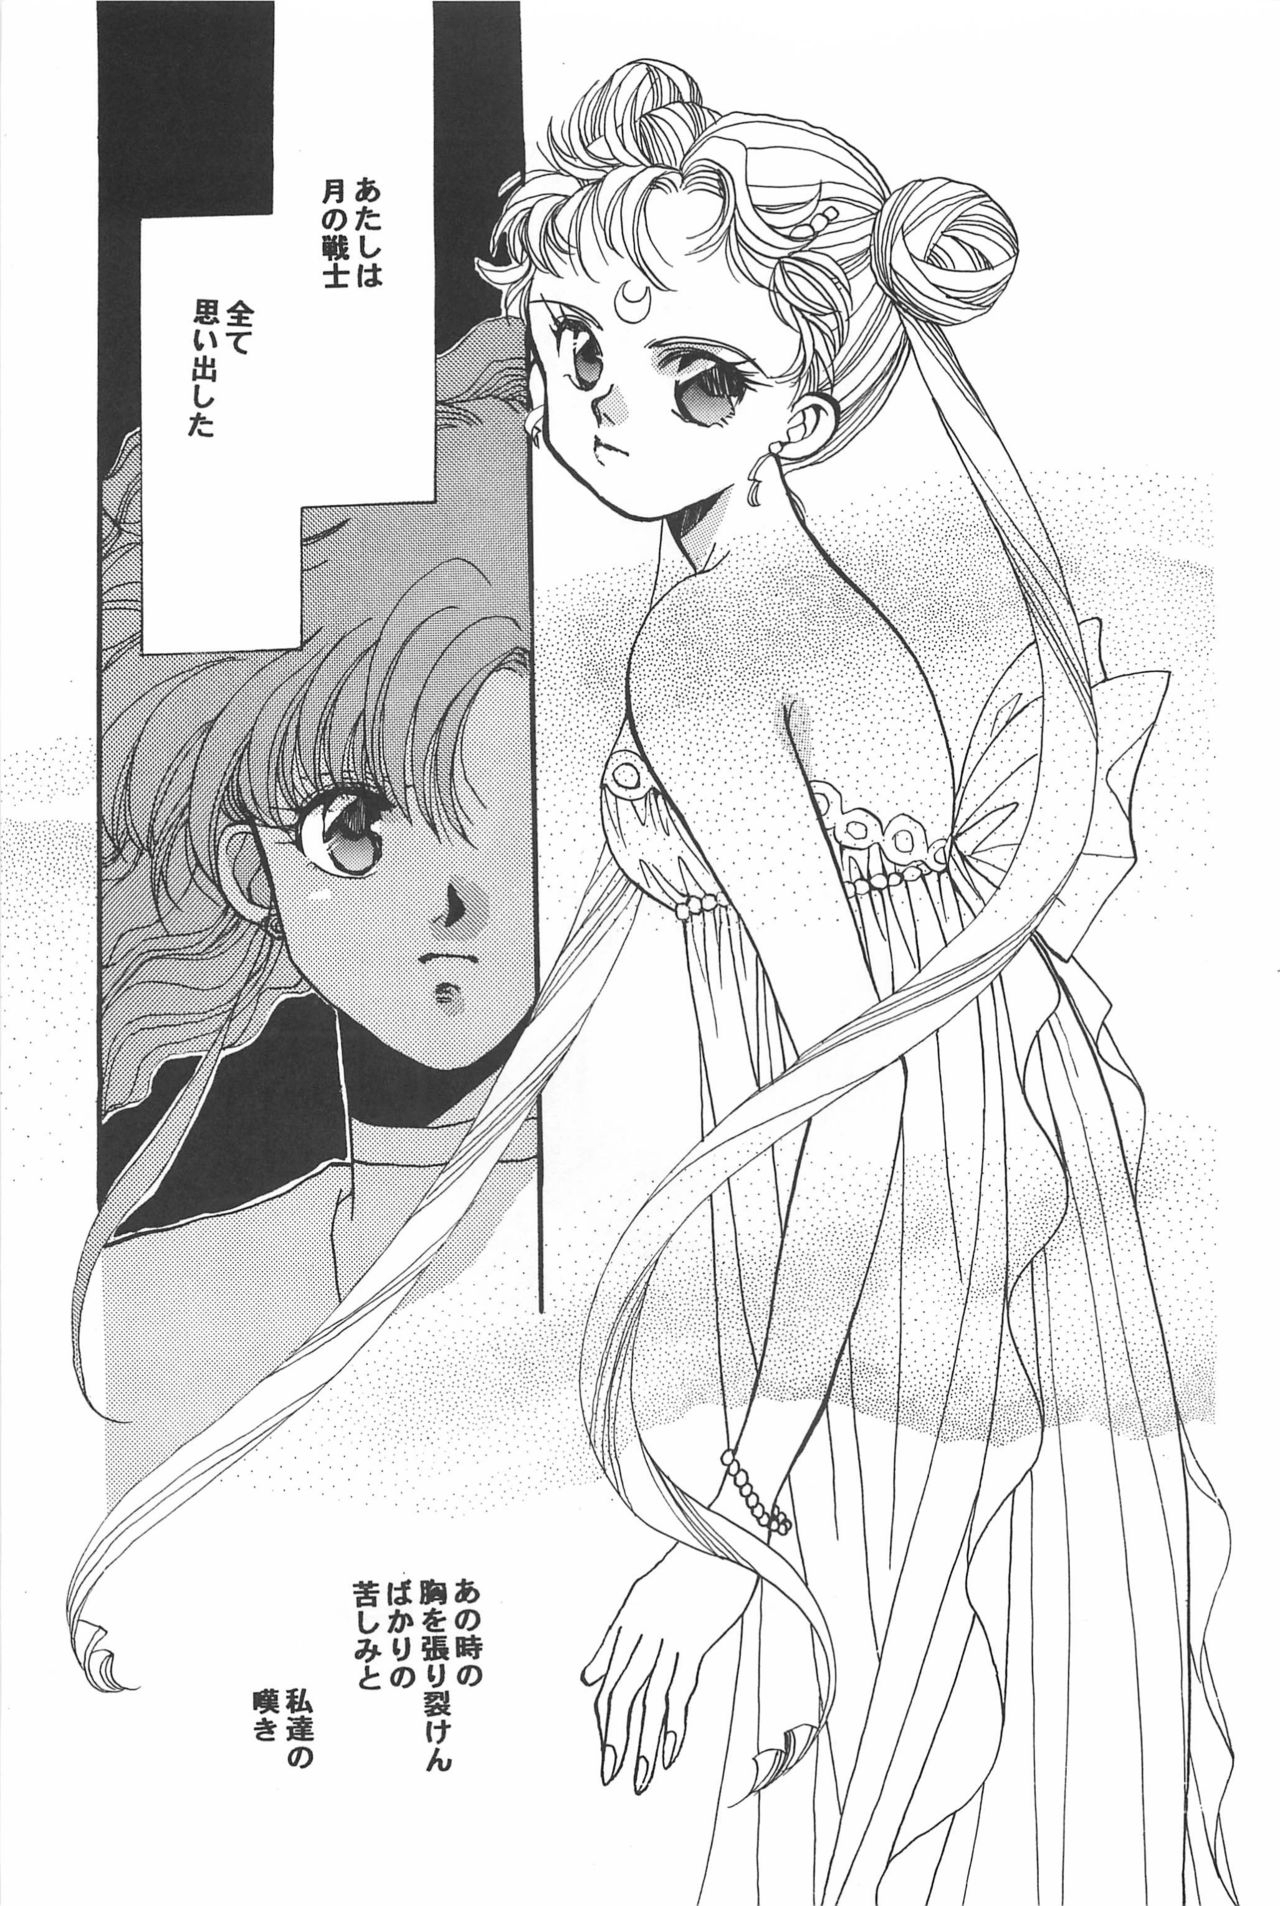 [Hello World (Muttri Moony)] Kaze no You ni Yume no You ni - Sailor Moon Collection (Sailor Moon) 148